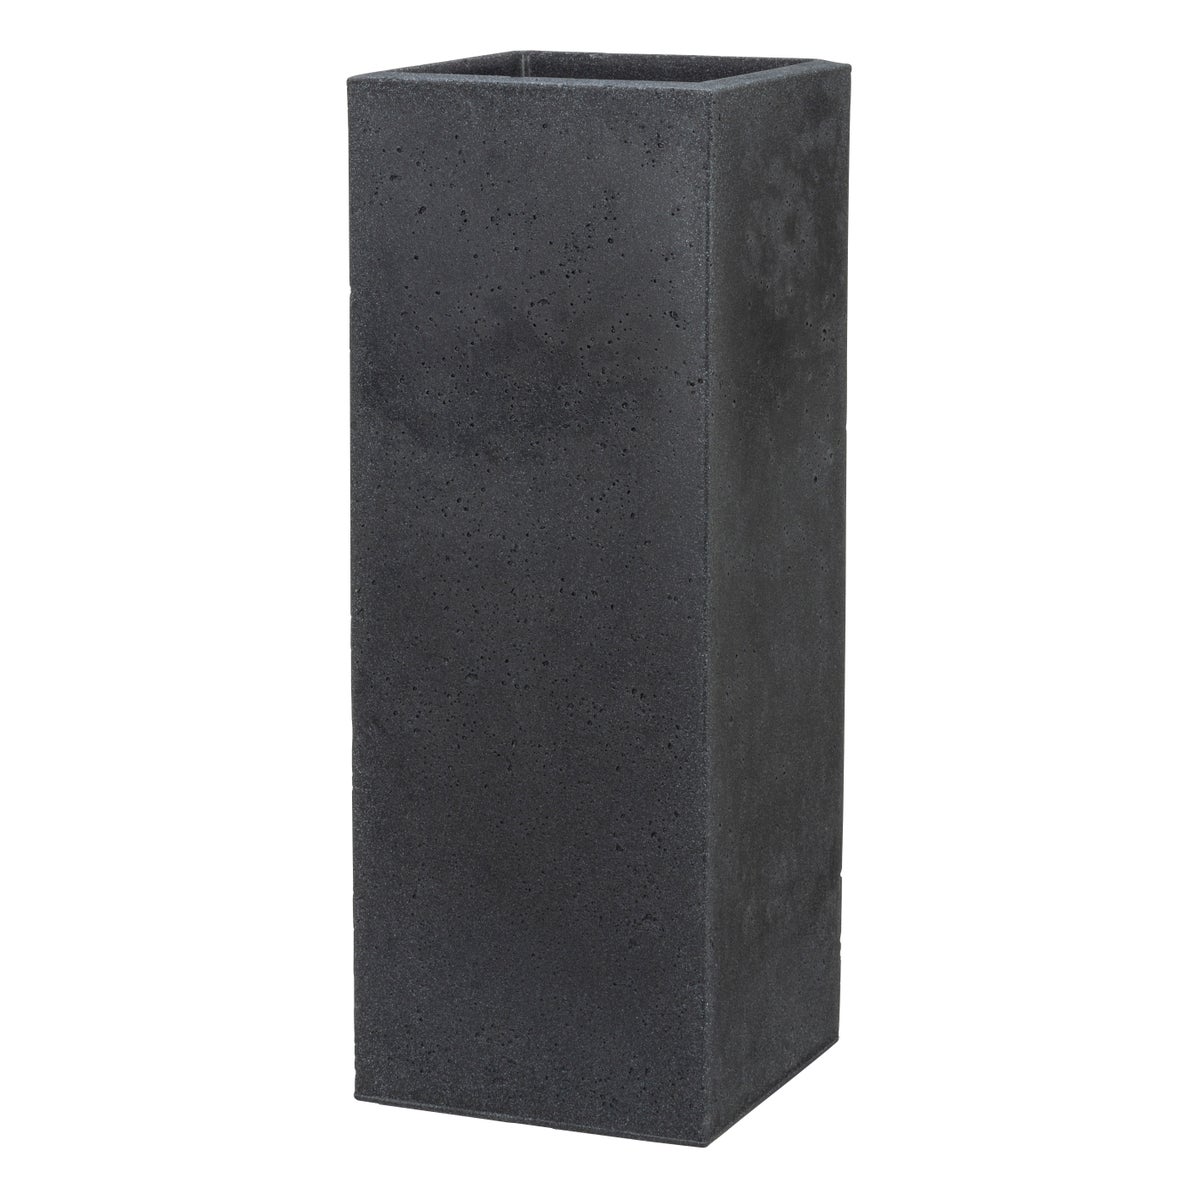 Scheurich C-Cube High 70, Hochgefäß/Blumentopf/Pflanzkübel, quadratisch,  aus Kunststoff Farbe: Stony Black, 26 cm Durchmesser, 69,8 cm hoch, 9 l Vol.